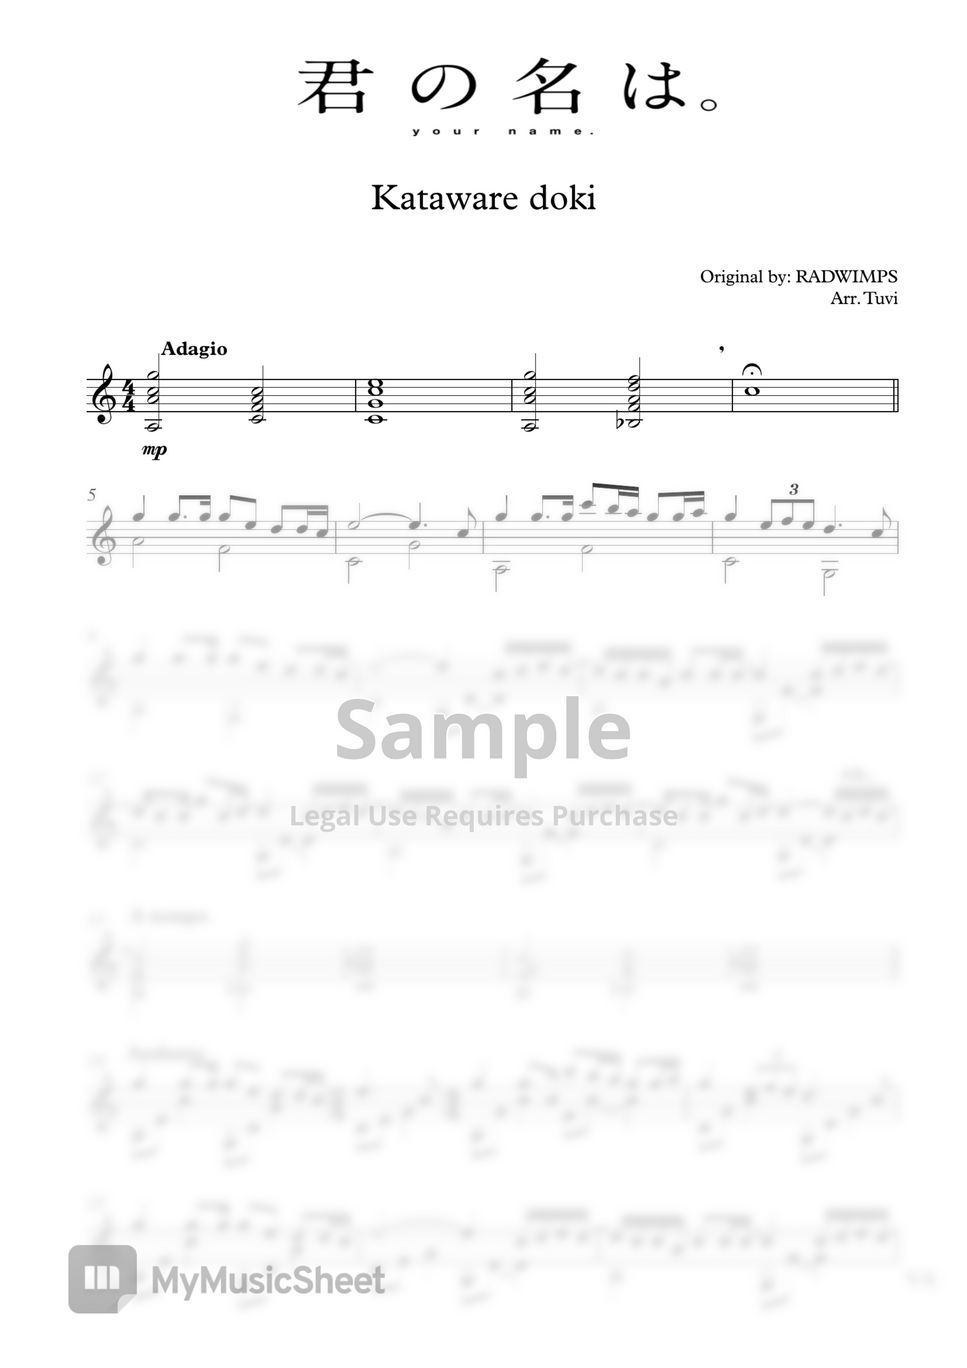 Radwimps - kataware doki (Classical guitar/Guitar cover) by Tuvi_guitar